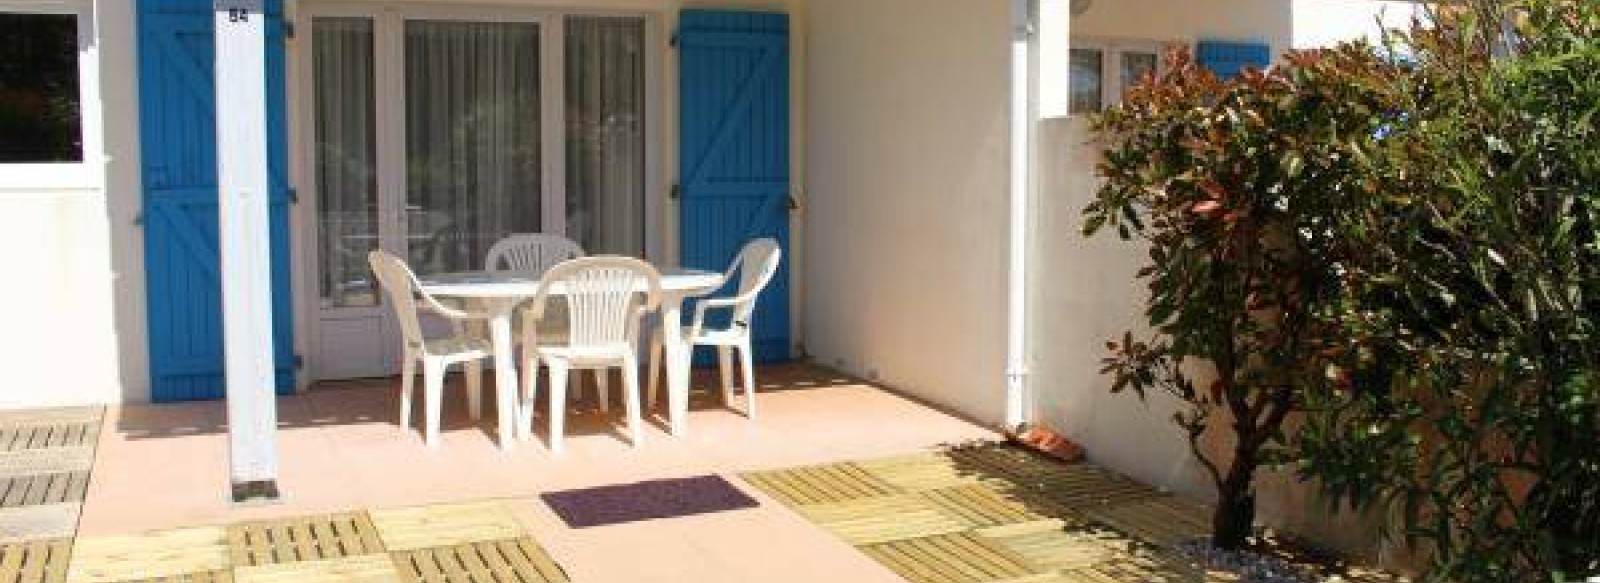 Maison de vacances dans quartier calme a Bretignolles sur Mer